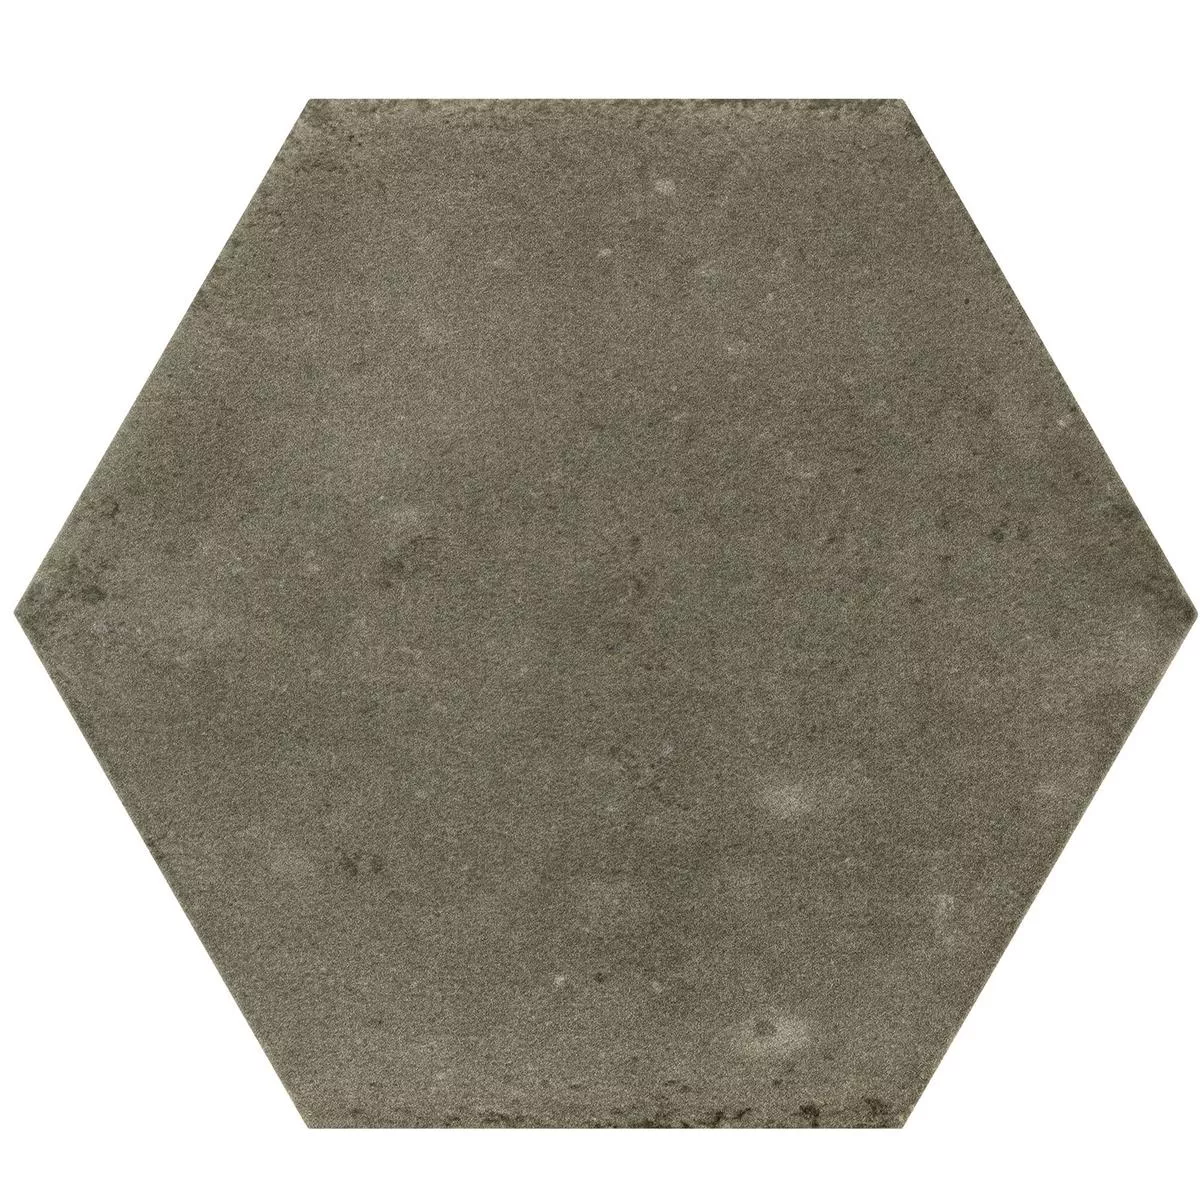 Gresie Arosa Înghețată Hexagon Braun17,3x15cm